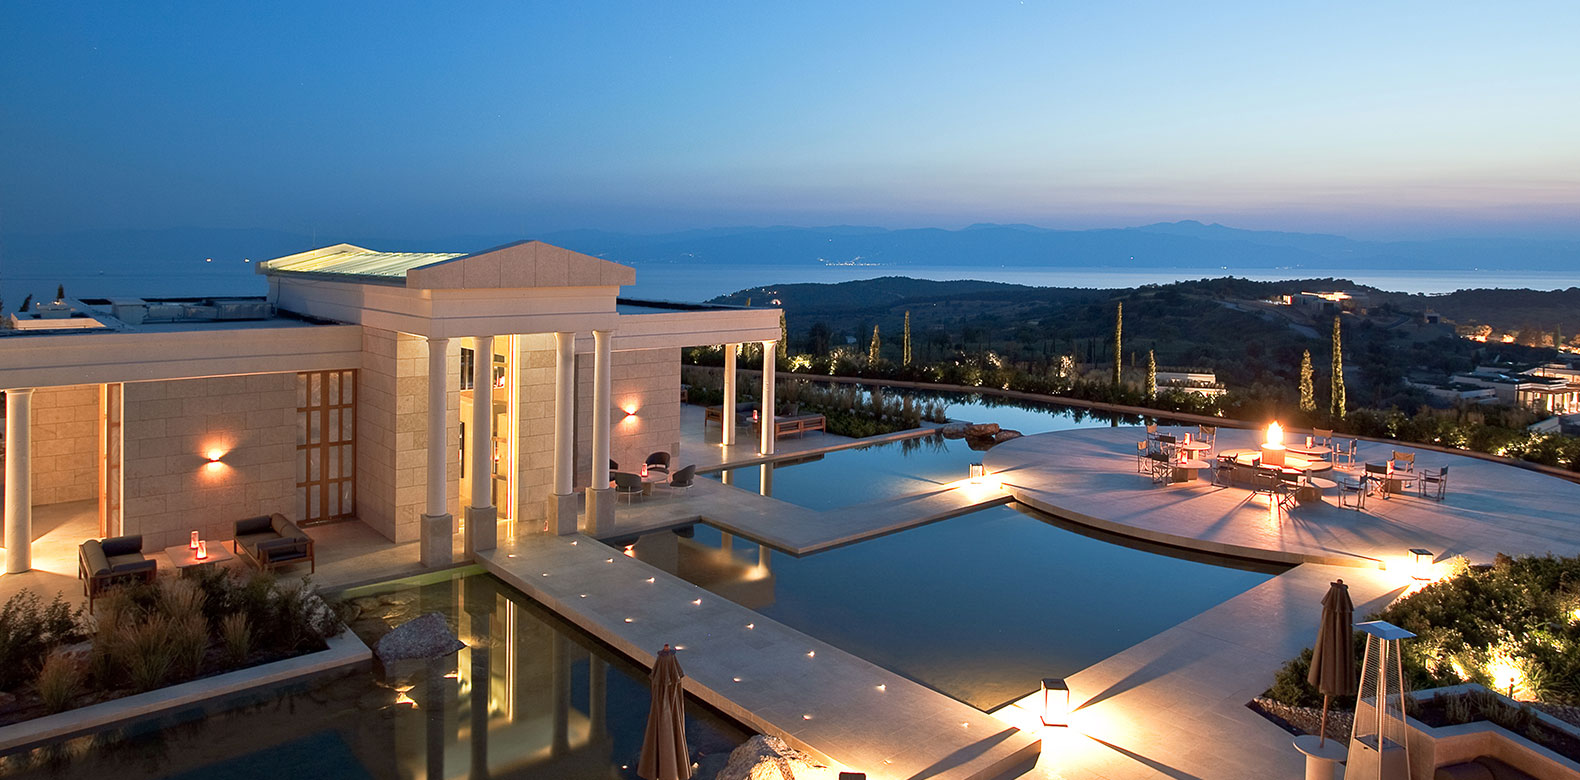 Το πιο ακριβό ξενοδοχείο στην Ευρώπη βρίσκεται στην Ελλάδα! - Φωτογραφία 8